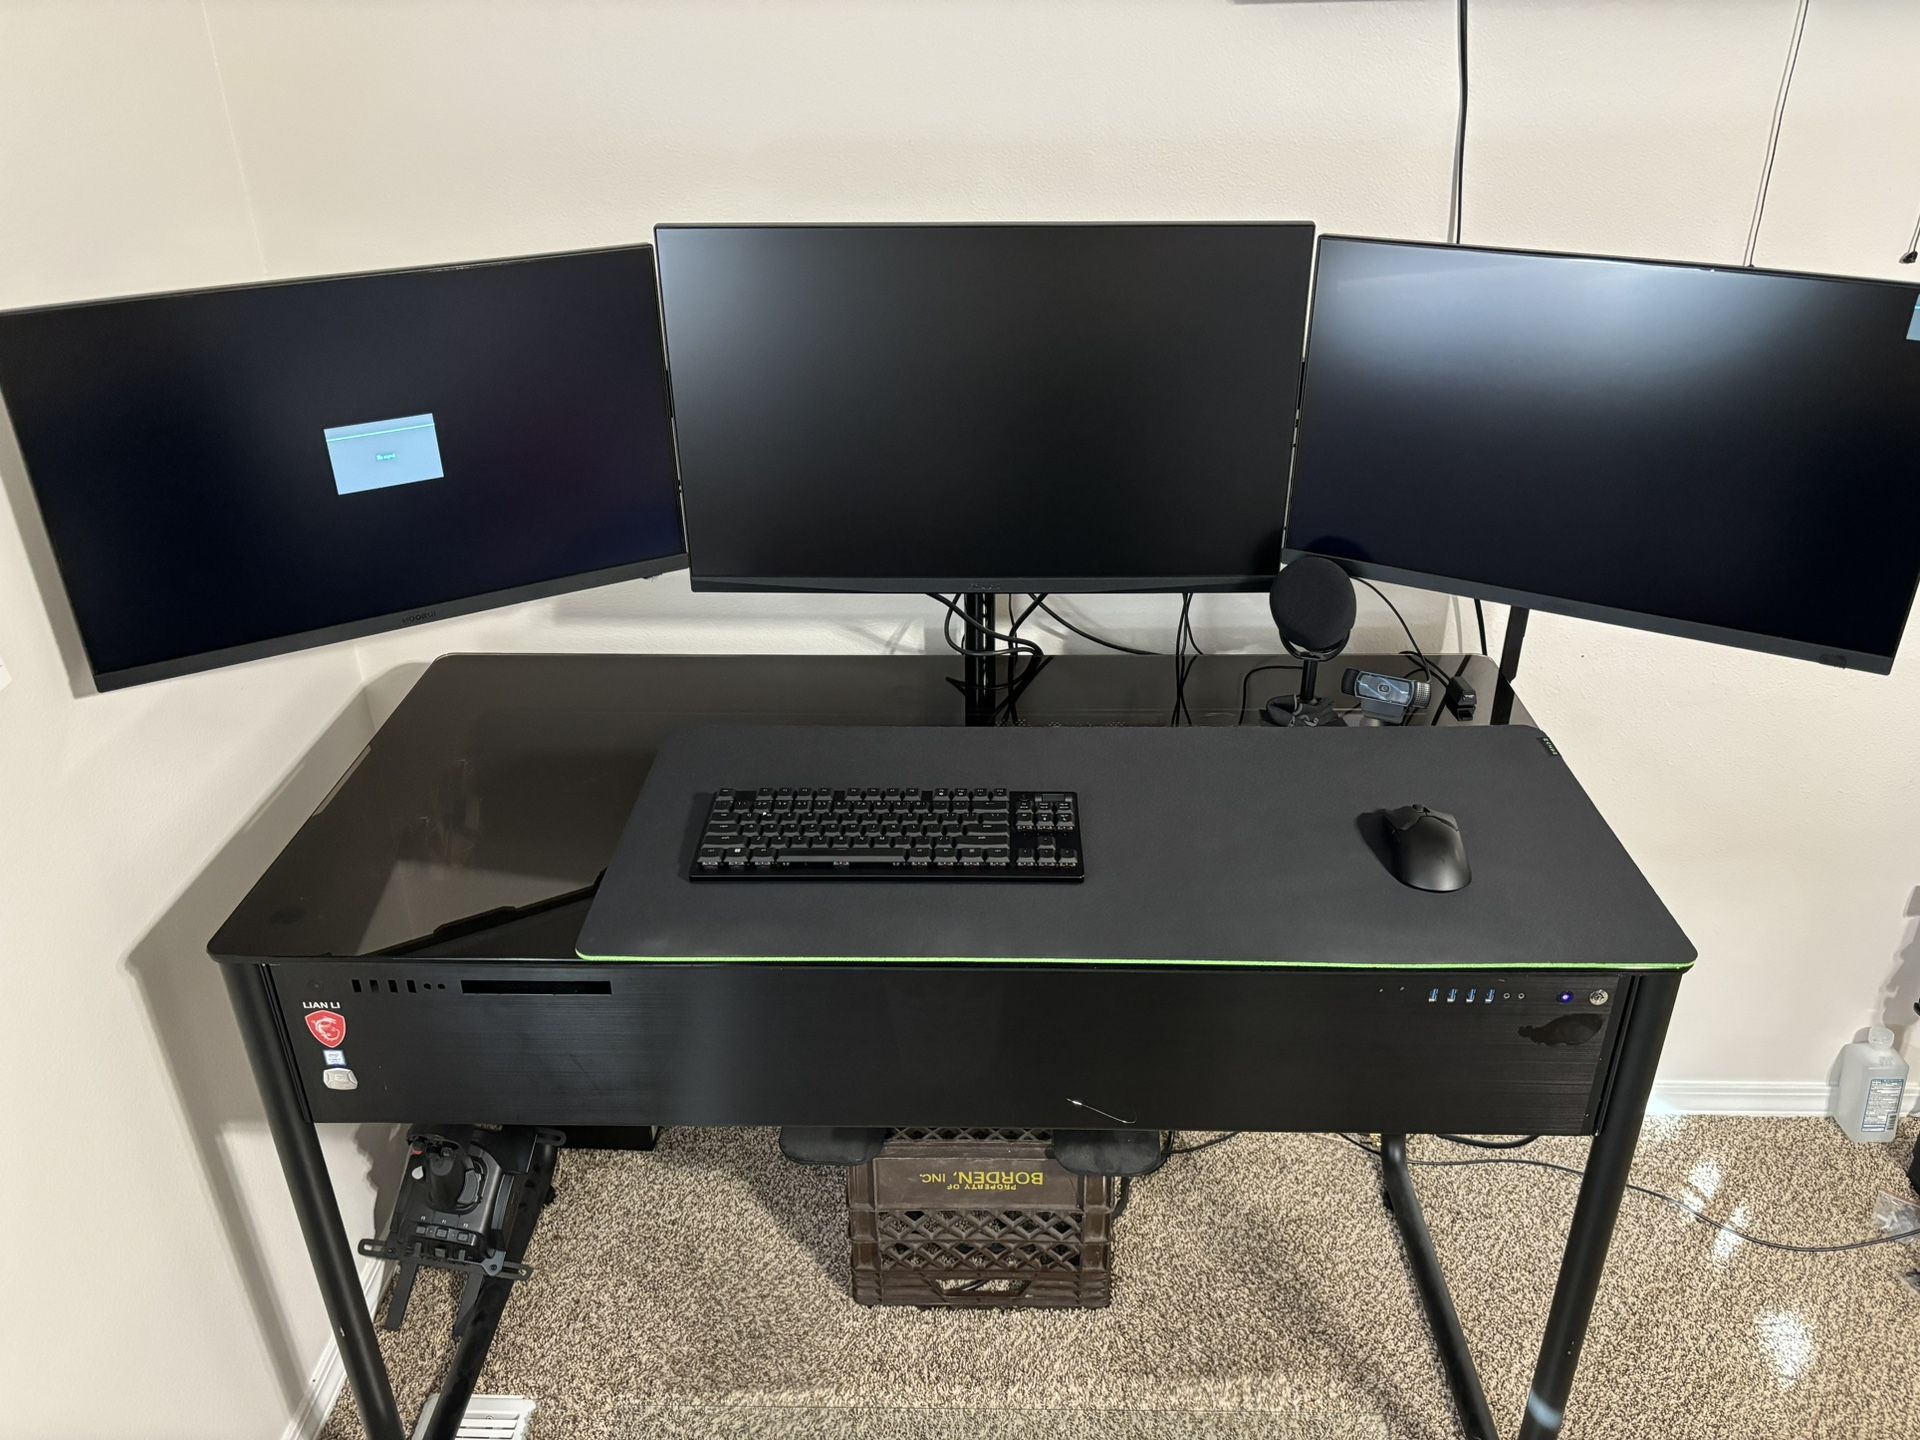 Lian Li Computer Case / Desk DK-02X + Ergotech Monitor Stand